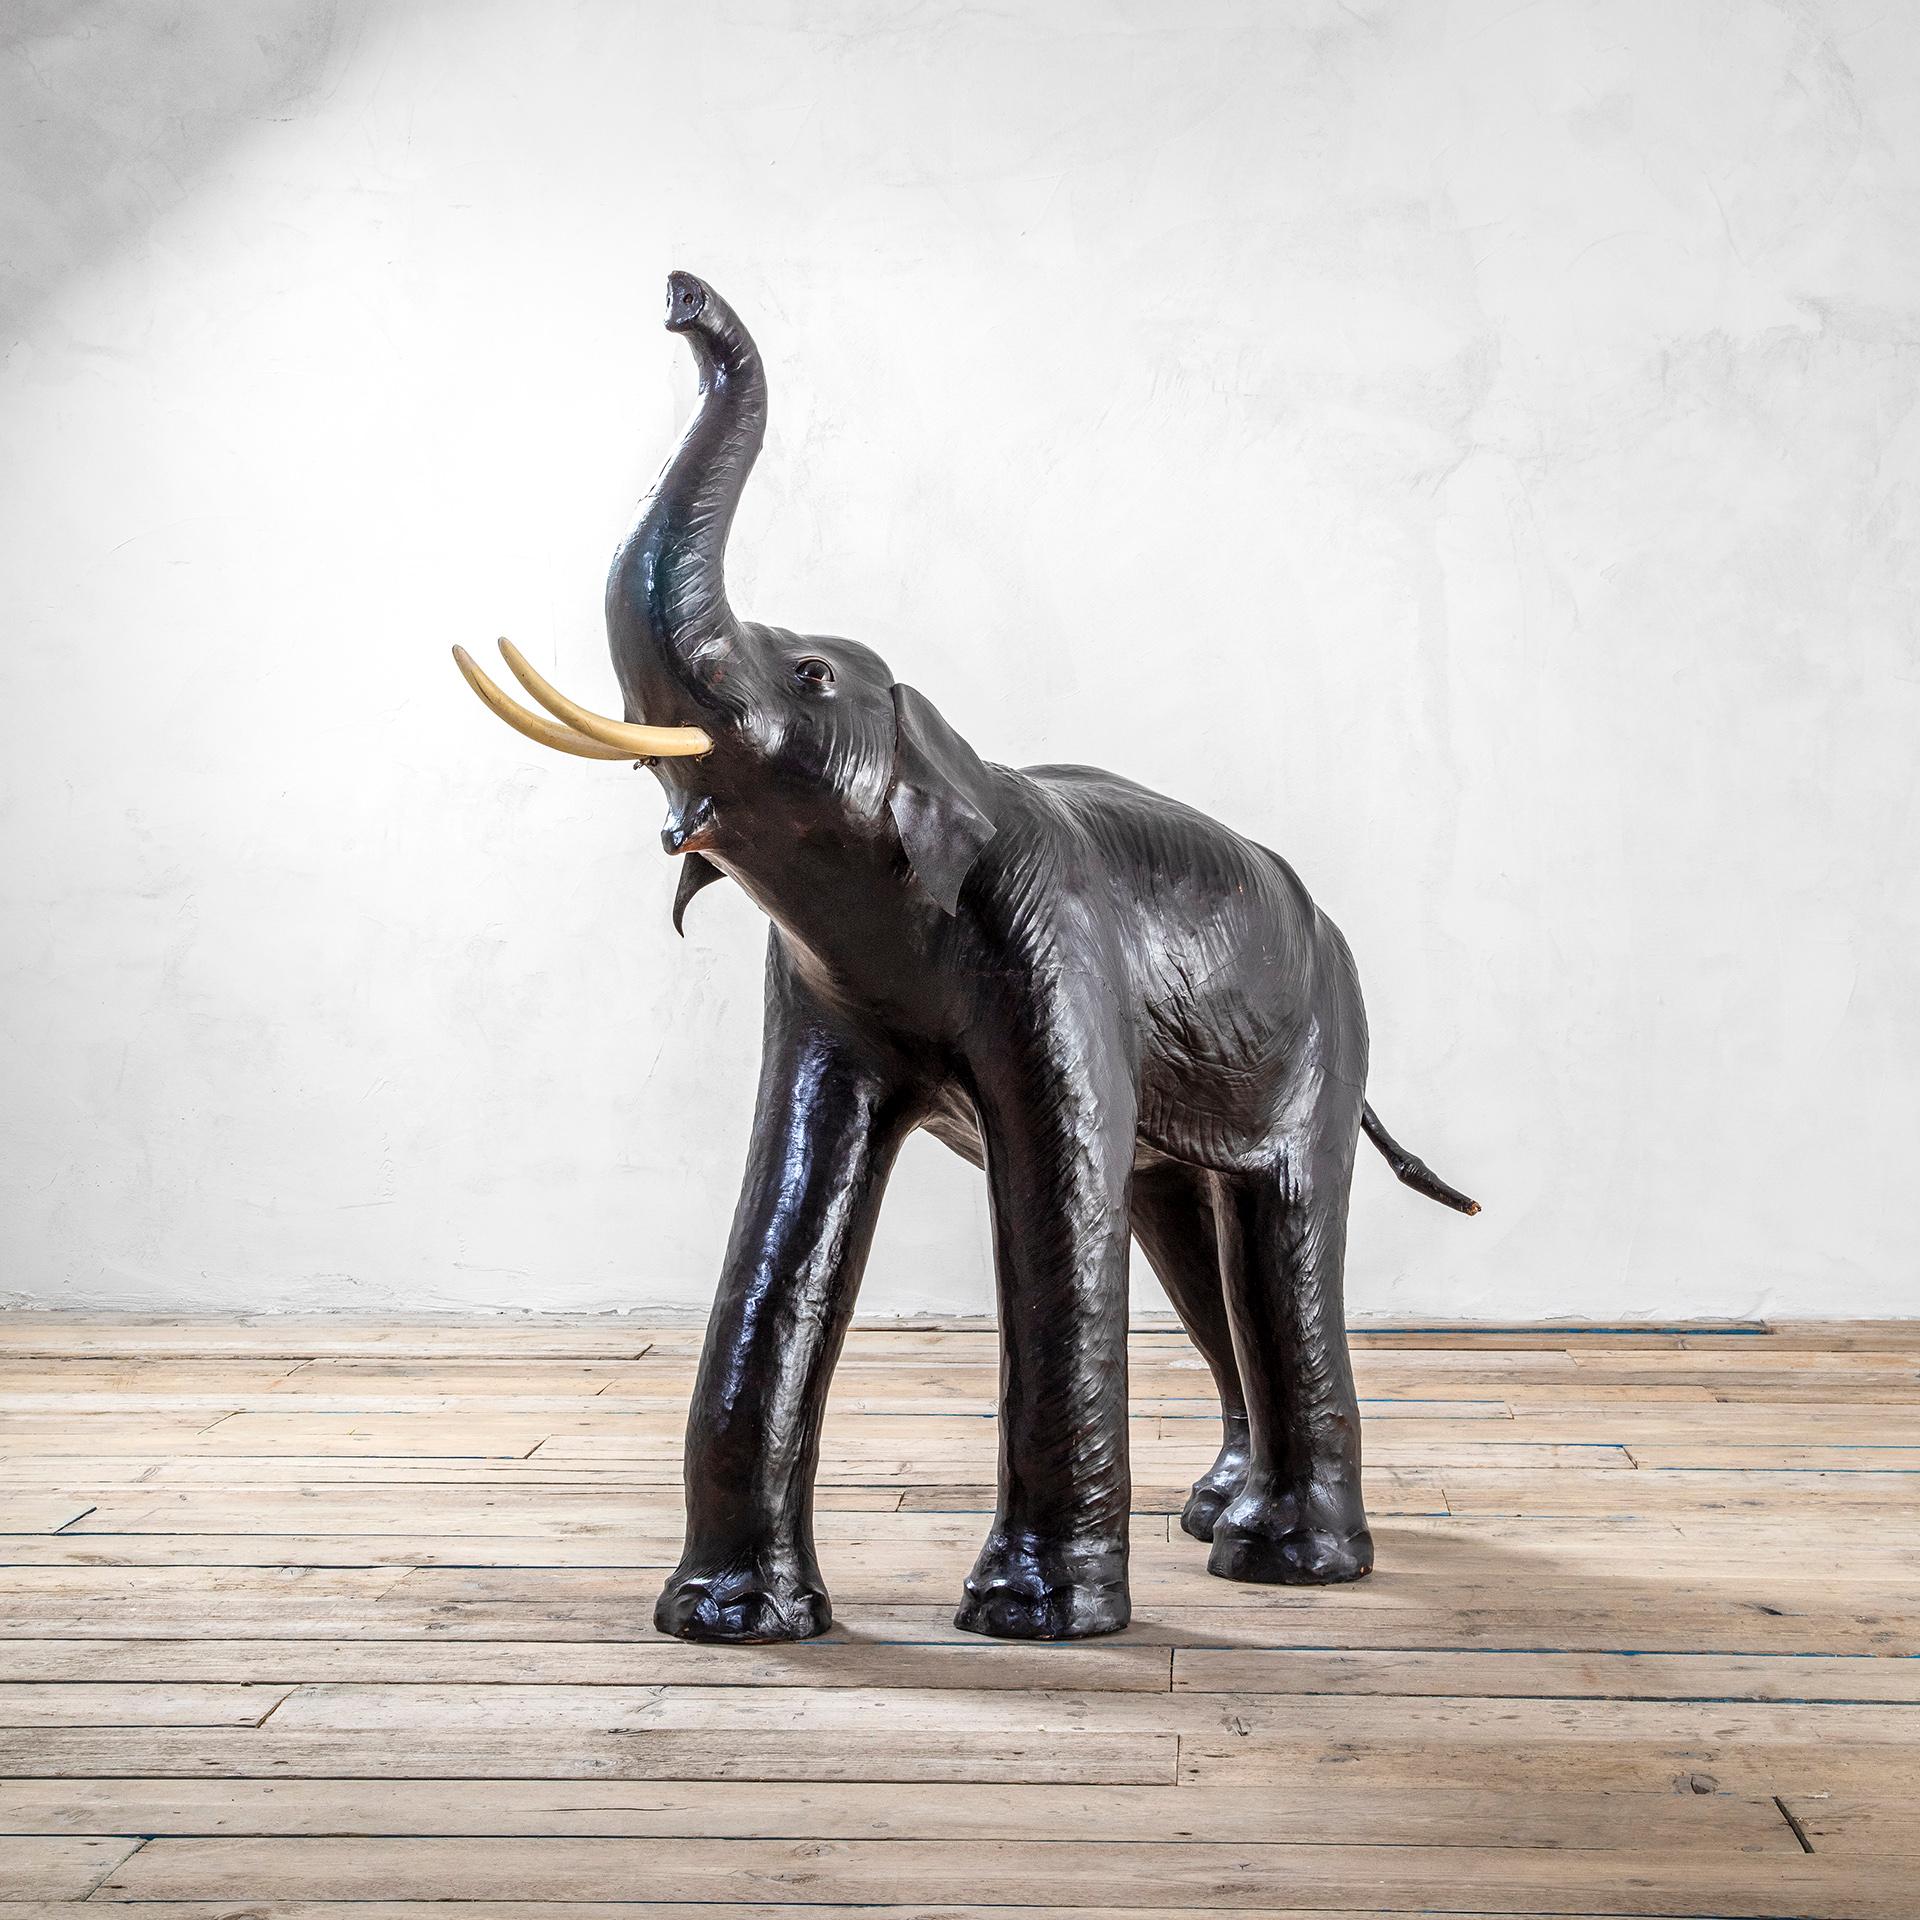 Sculpture en forme d'éléphant produite et réalisée en Italie dans les années 60.
L'éléphant est entièrement en 